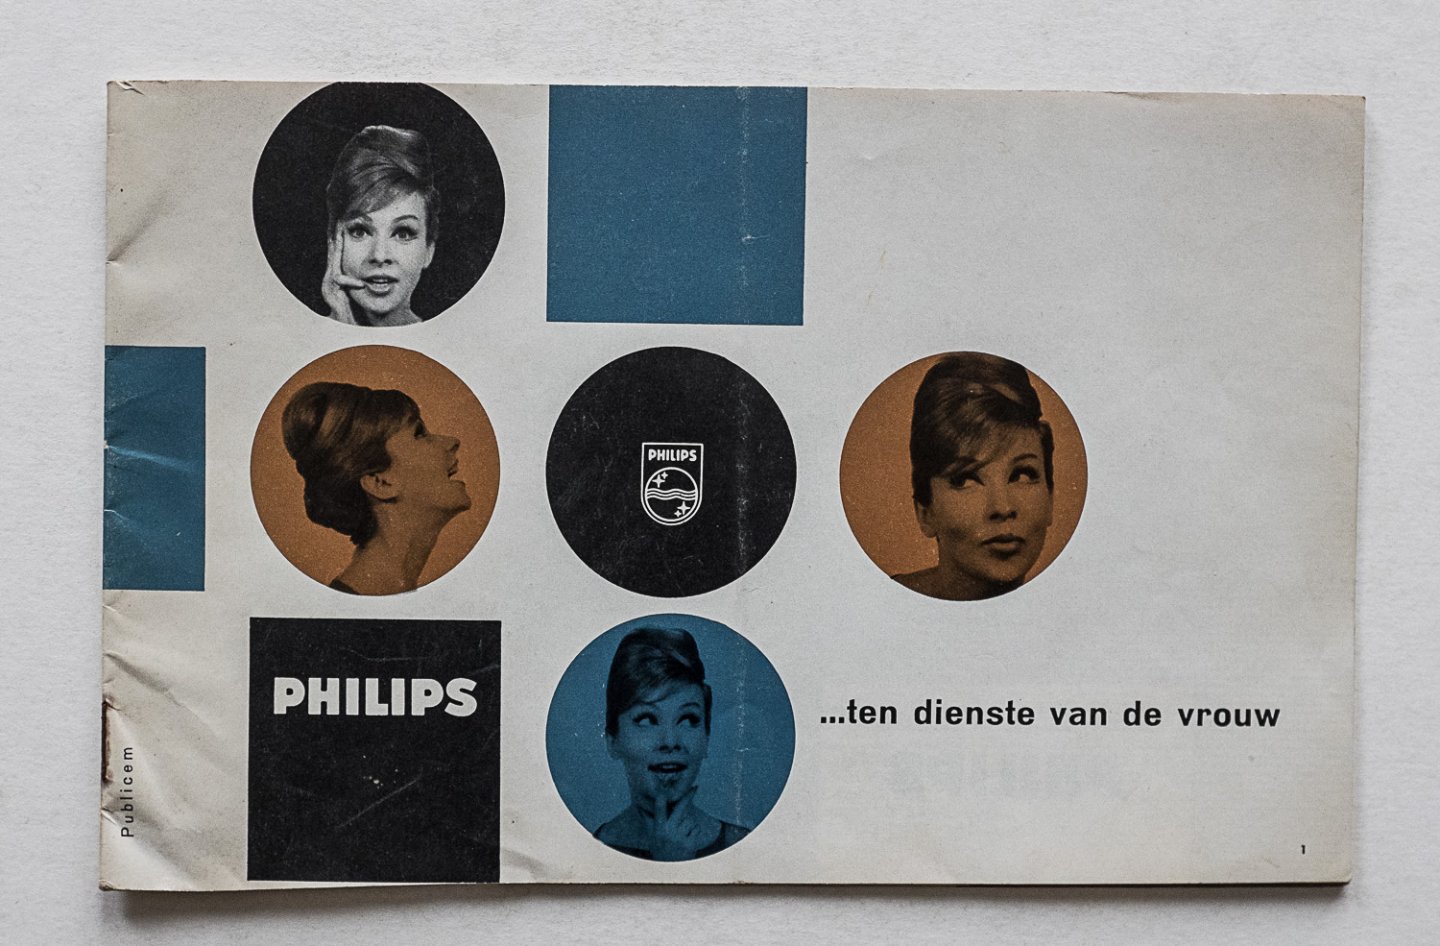 Philips Gloeilampenfabrieken Nederland n.v., Eindhoven - Philips --- ten dienste van de vrouw